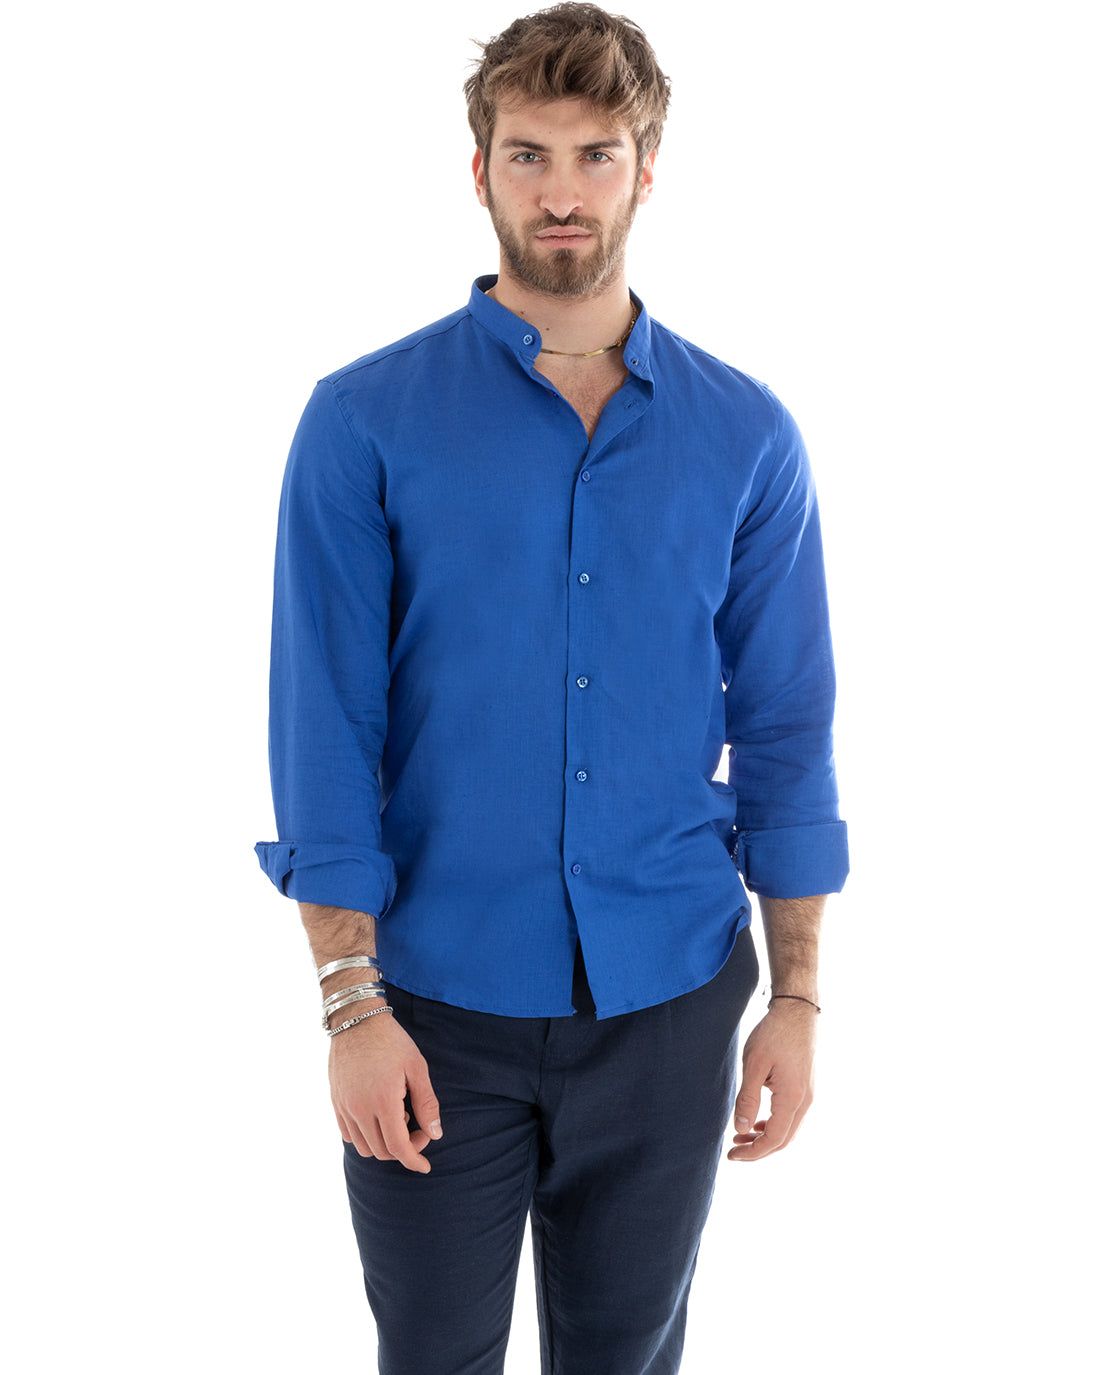 Camicia Uomo Collo Coreano Manica Lunga Lino Tinta Unita Sartoriale Blu Royal GIOSAL-C2669A